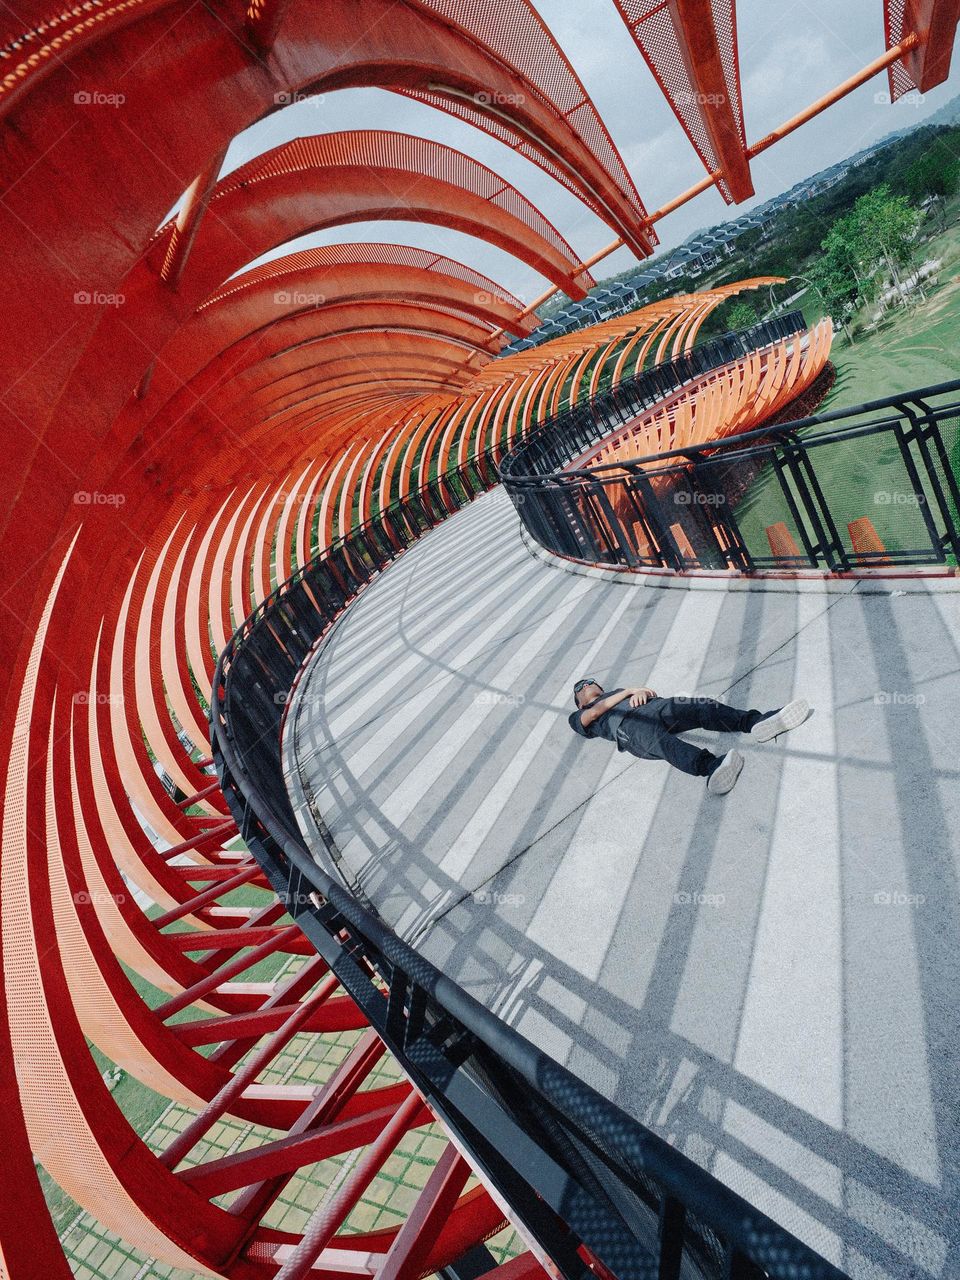 A boy lying down on a dynamic designed curved pedestrian bridge